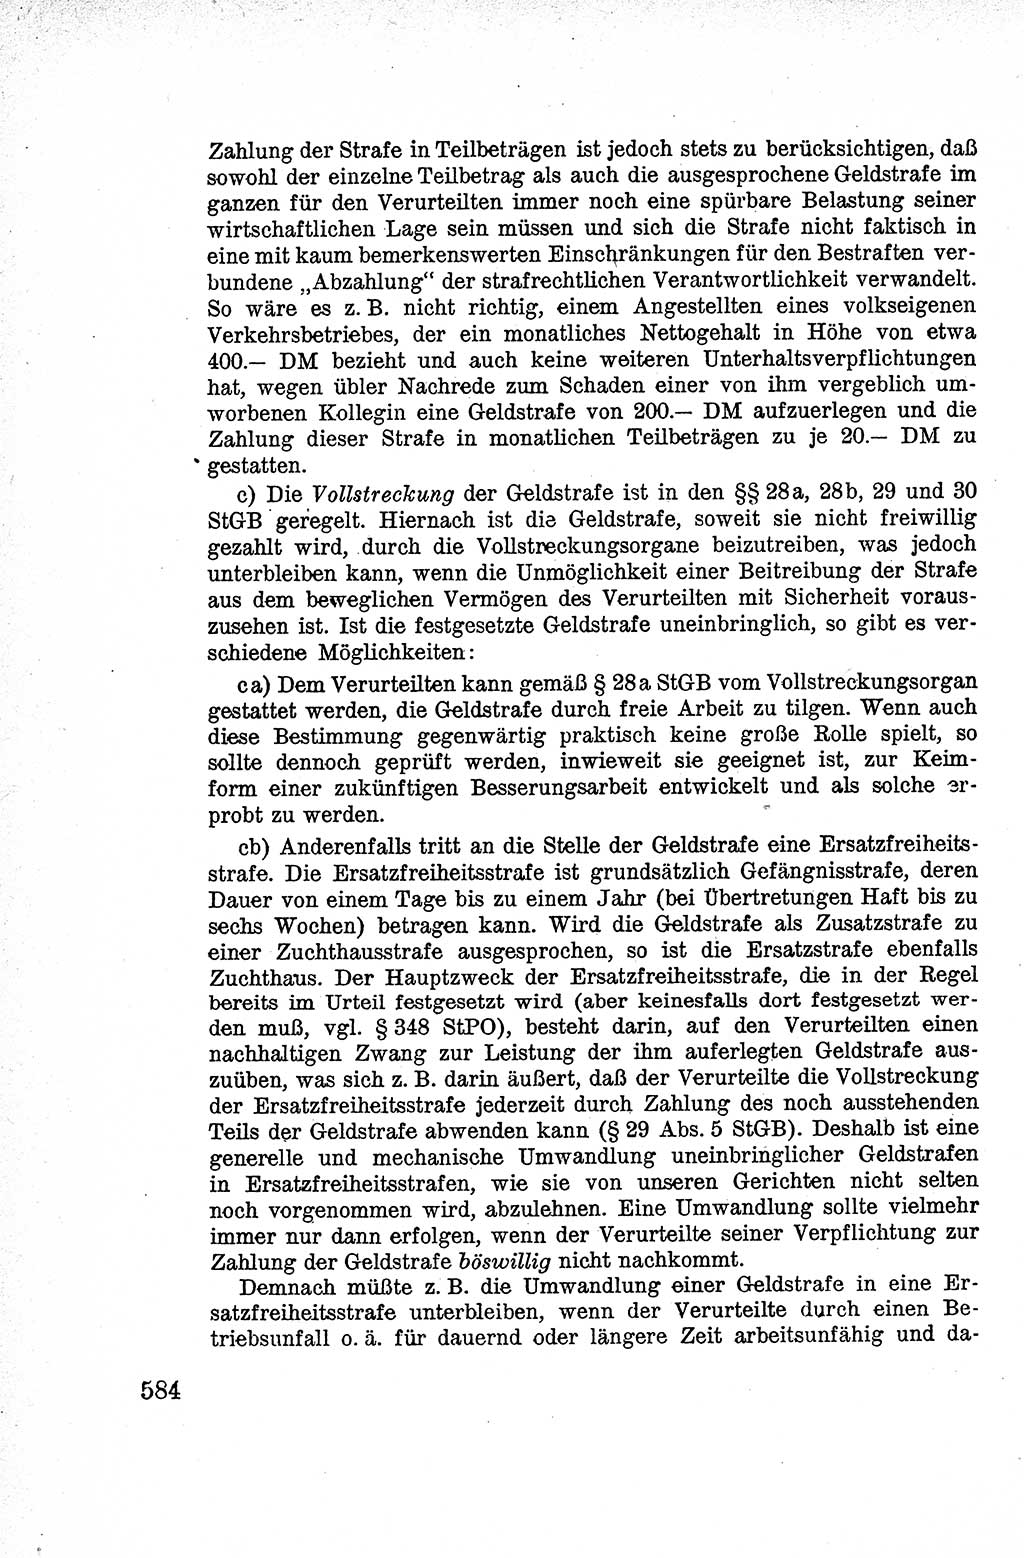 Lehrbuch des Strafrechts der Deutschen Demokratischen Republik (DDR), Allgemeiner Teil 1959, Seite 584 (Lb. Strafr. DDR AT 1959, S. 584)